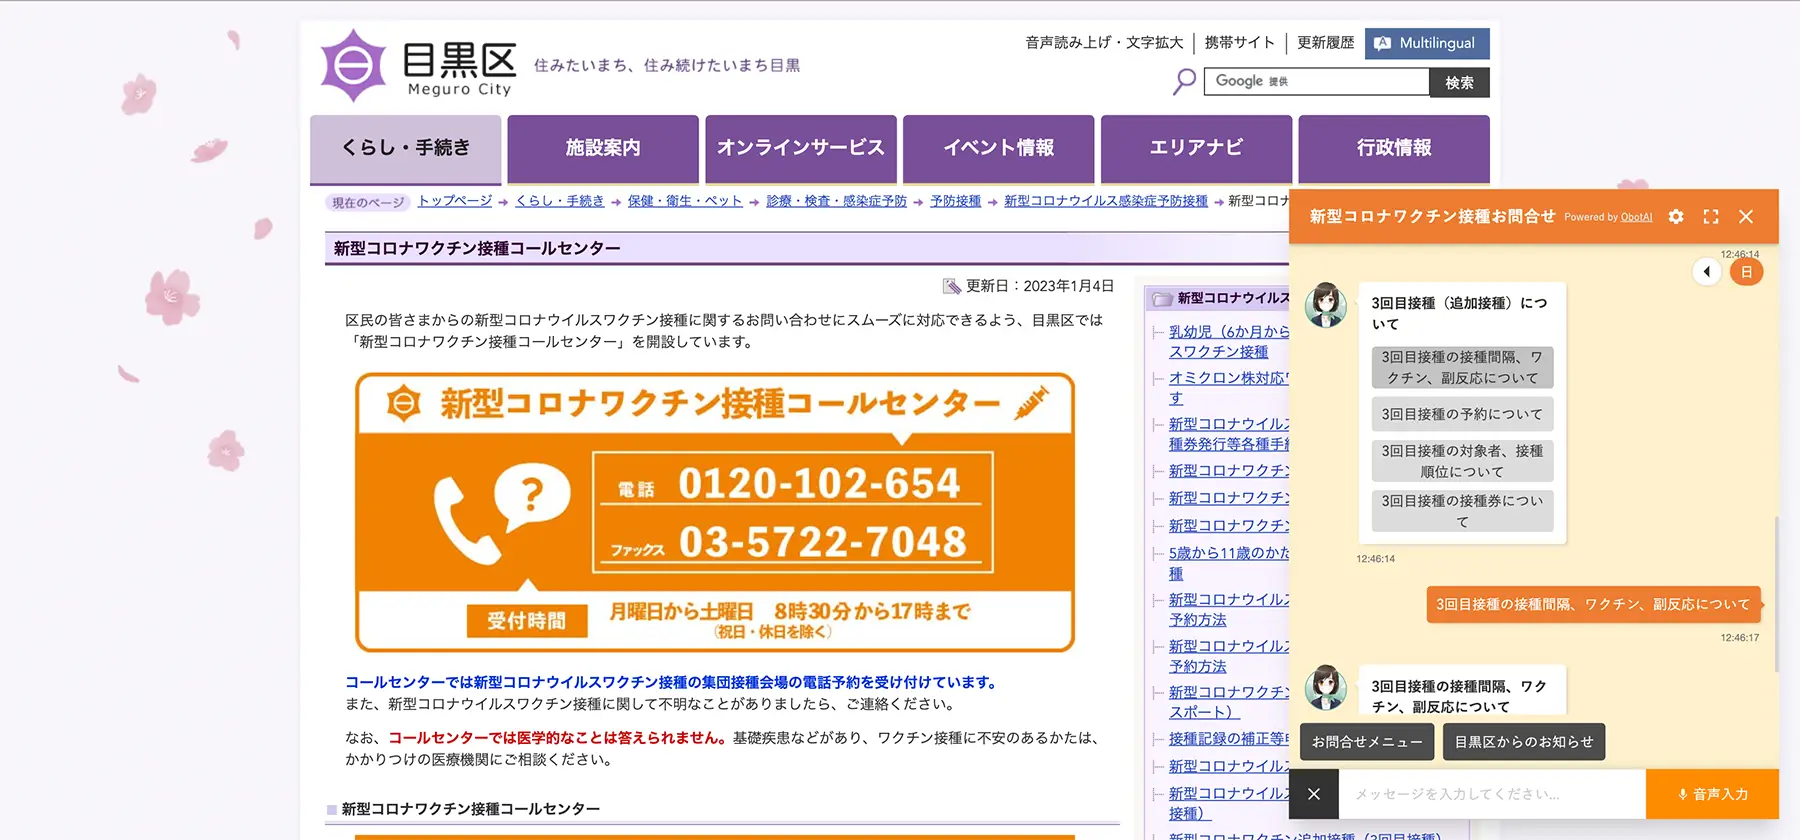 東京都目黒区公式WEBサイト内ページ「新型コロナワクチン接種コールセンター」